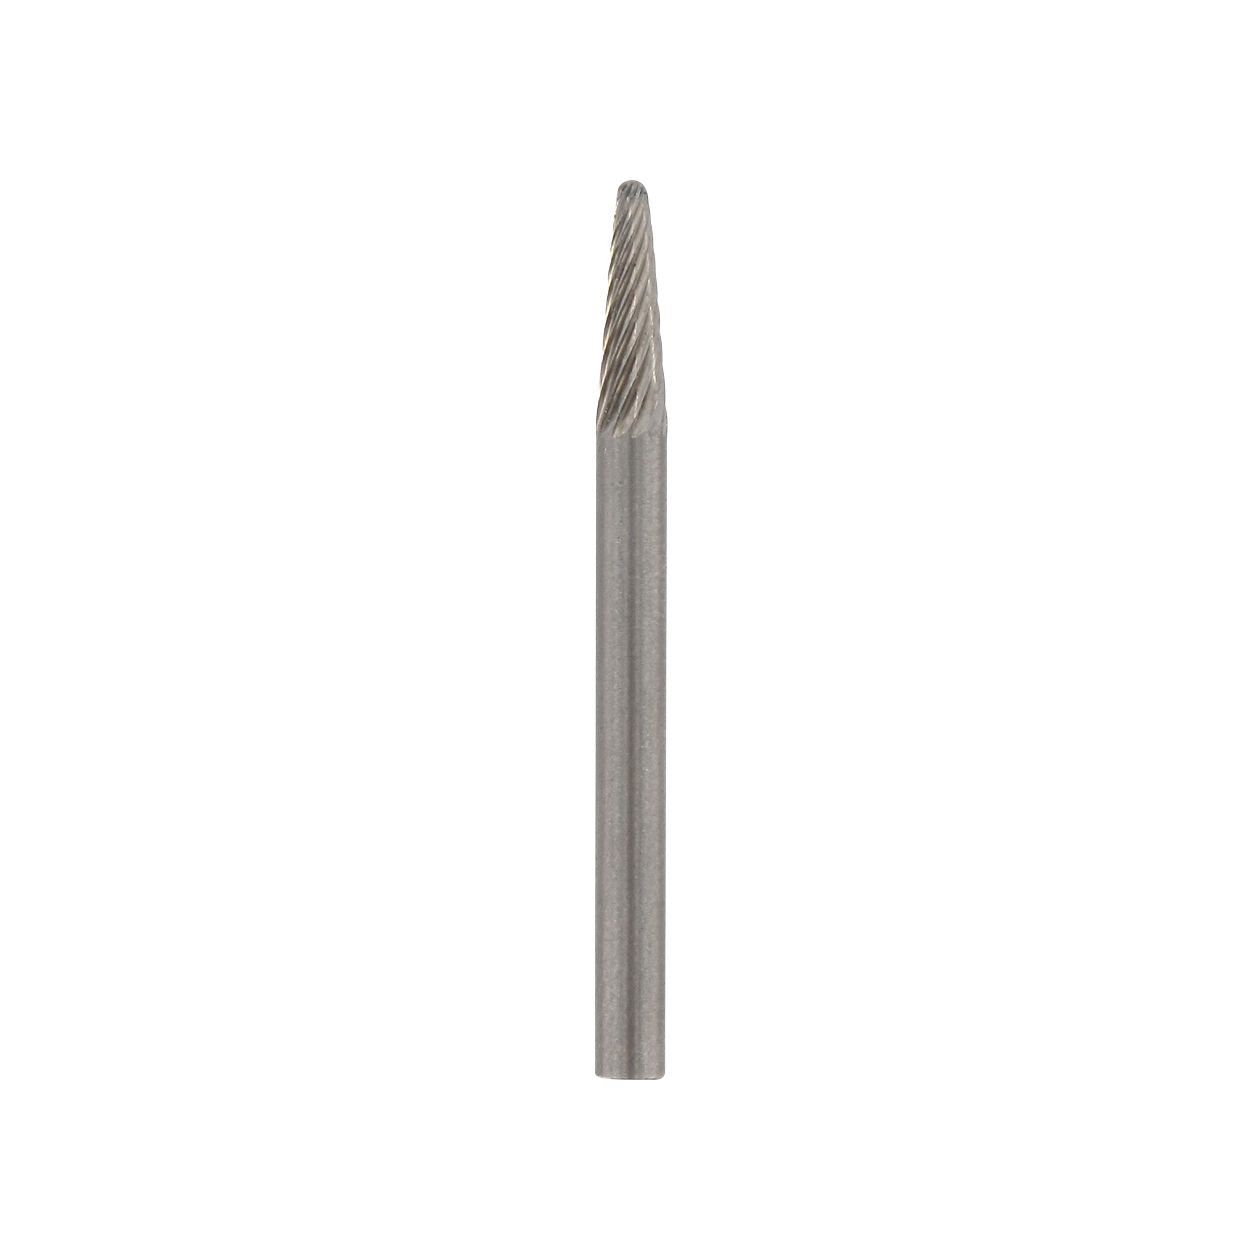 DREMEL 9910 Wolfram-karbidová fréza (harpunovitý hrot) 3,2 mm